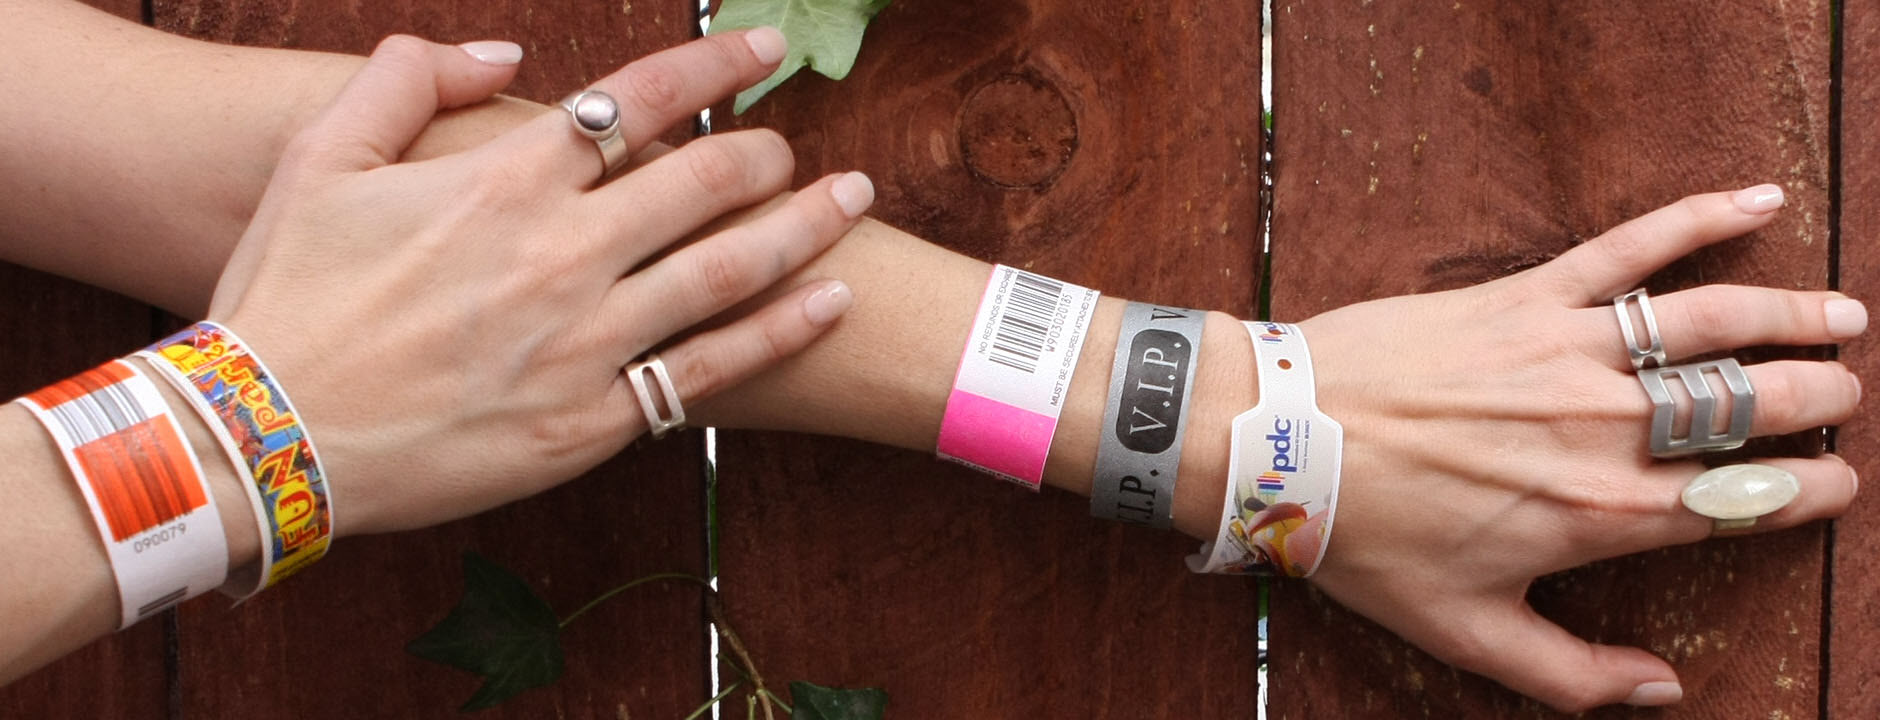 Custom RFID Bracelet Eco-friendly Silicone MIFARE 1K/4K Wristband